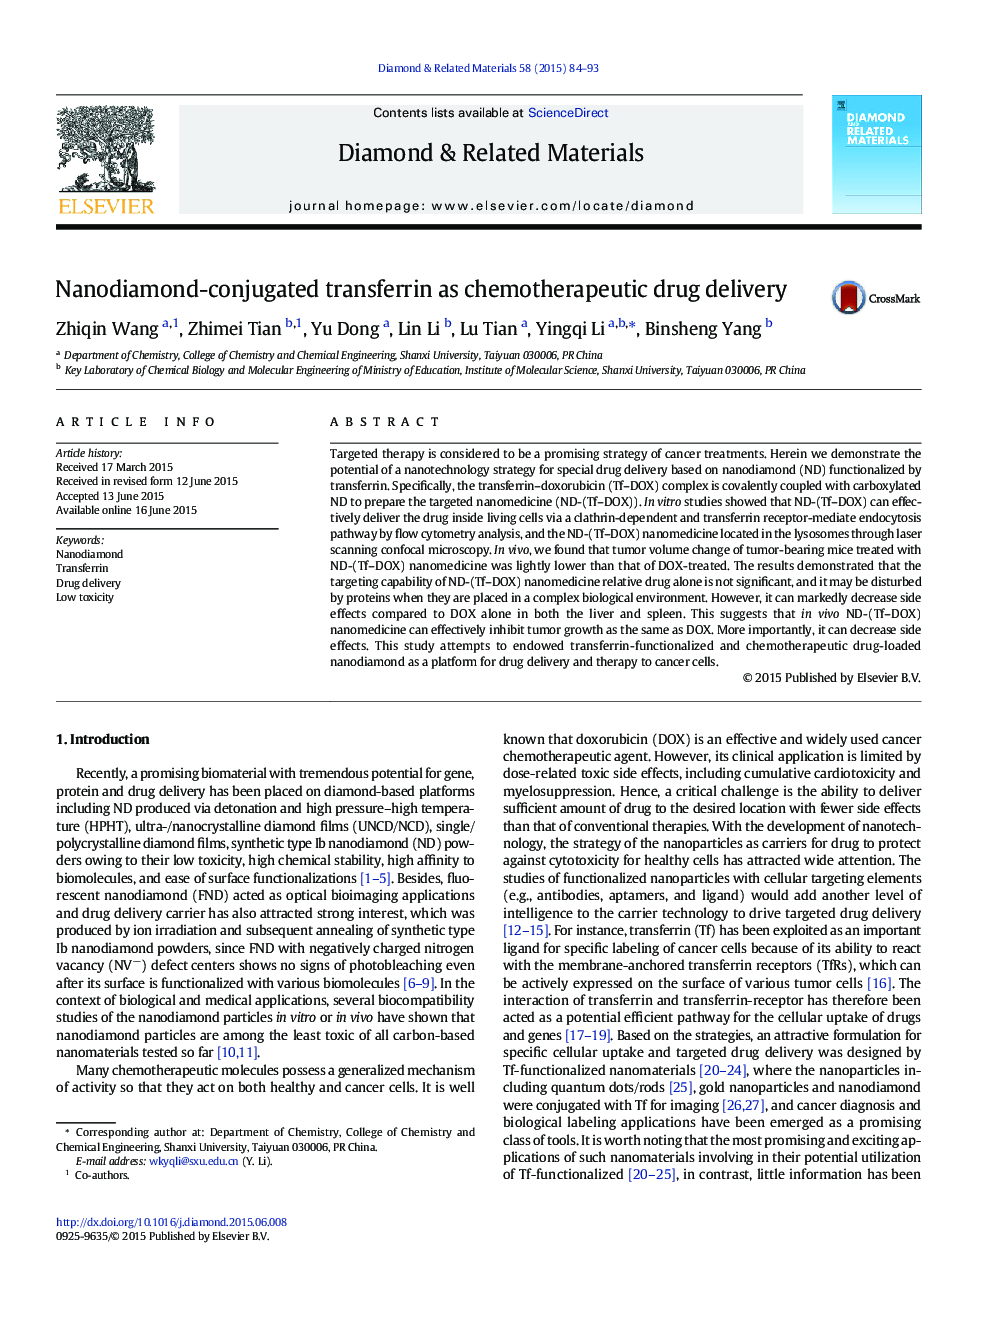 Nanodiamond-conjugated transferrin as chemotherapeutic drug delivery